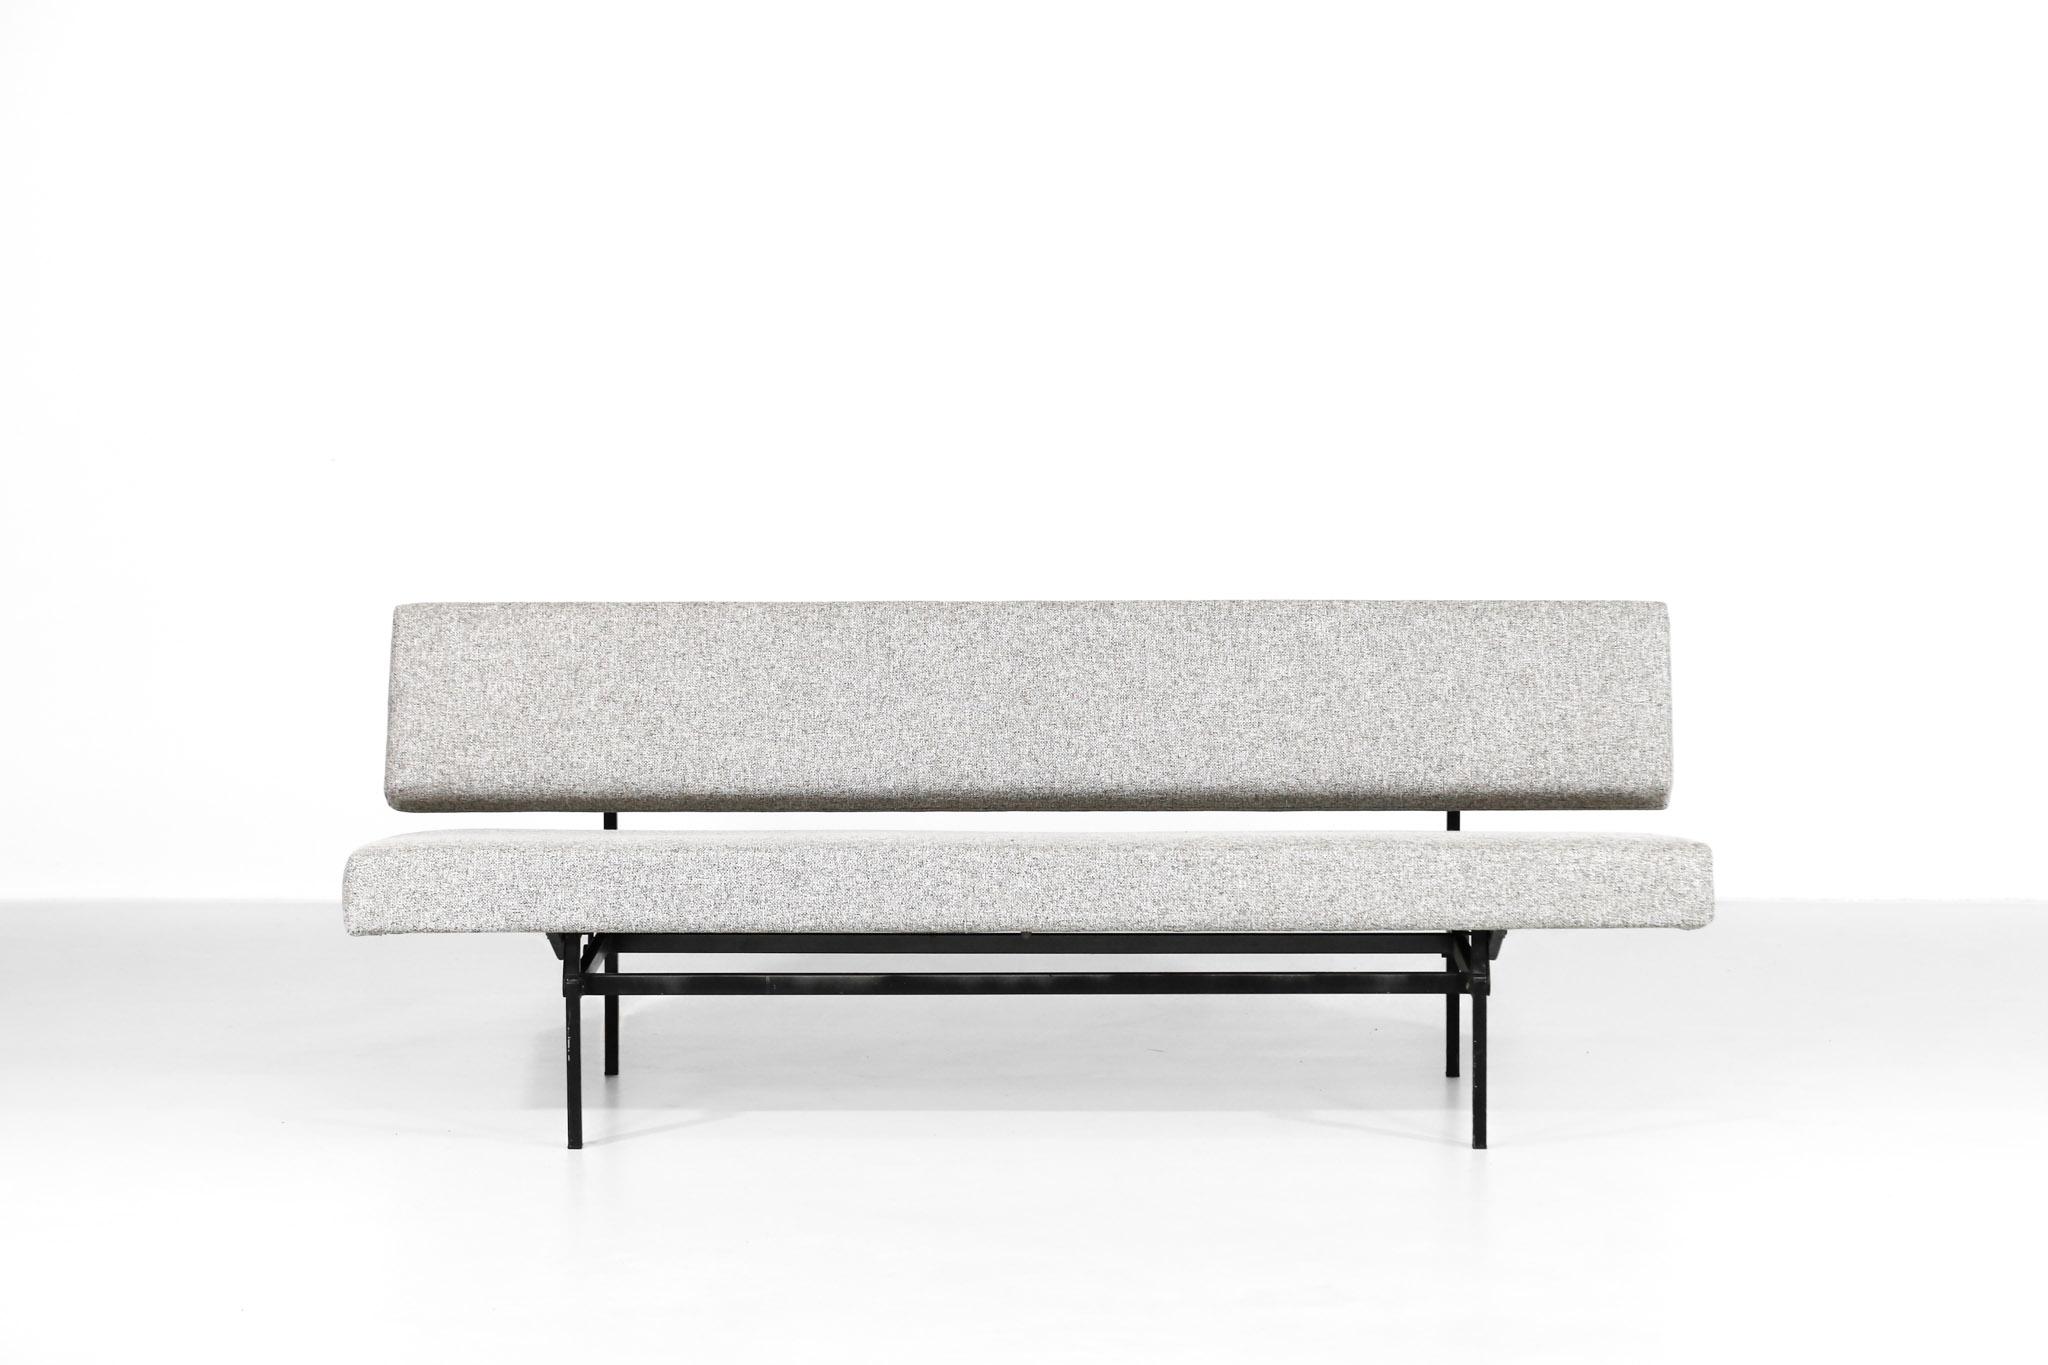 Schönes Sofa, entworfen von Martin Visser für 't Spectrum.
Frisch aufgepolstert mit neuem Stoff und Schaumstoff. Struktur aus Metall. 
2 Positionen, kann im Bett umgewandelt werden.
 